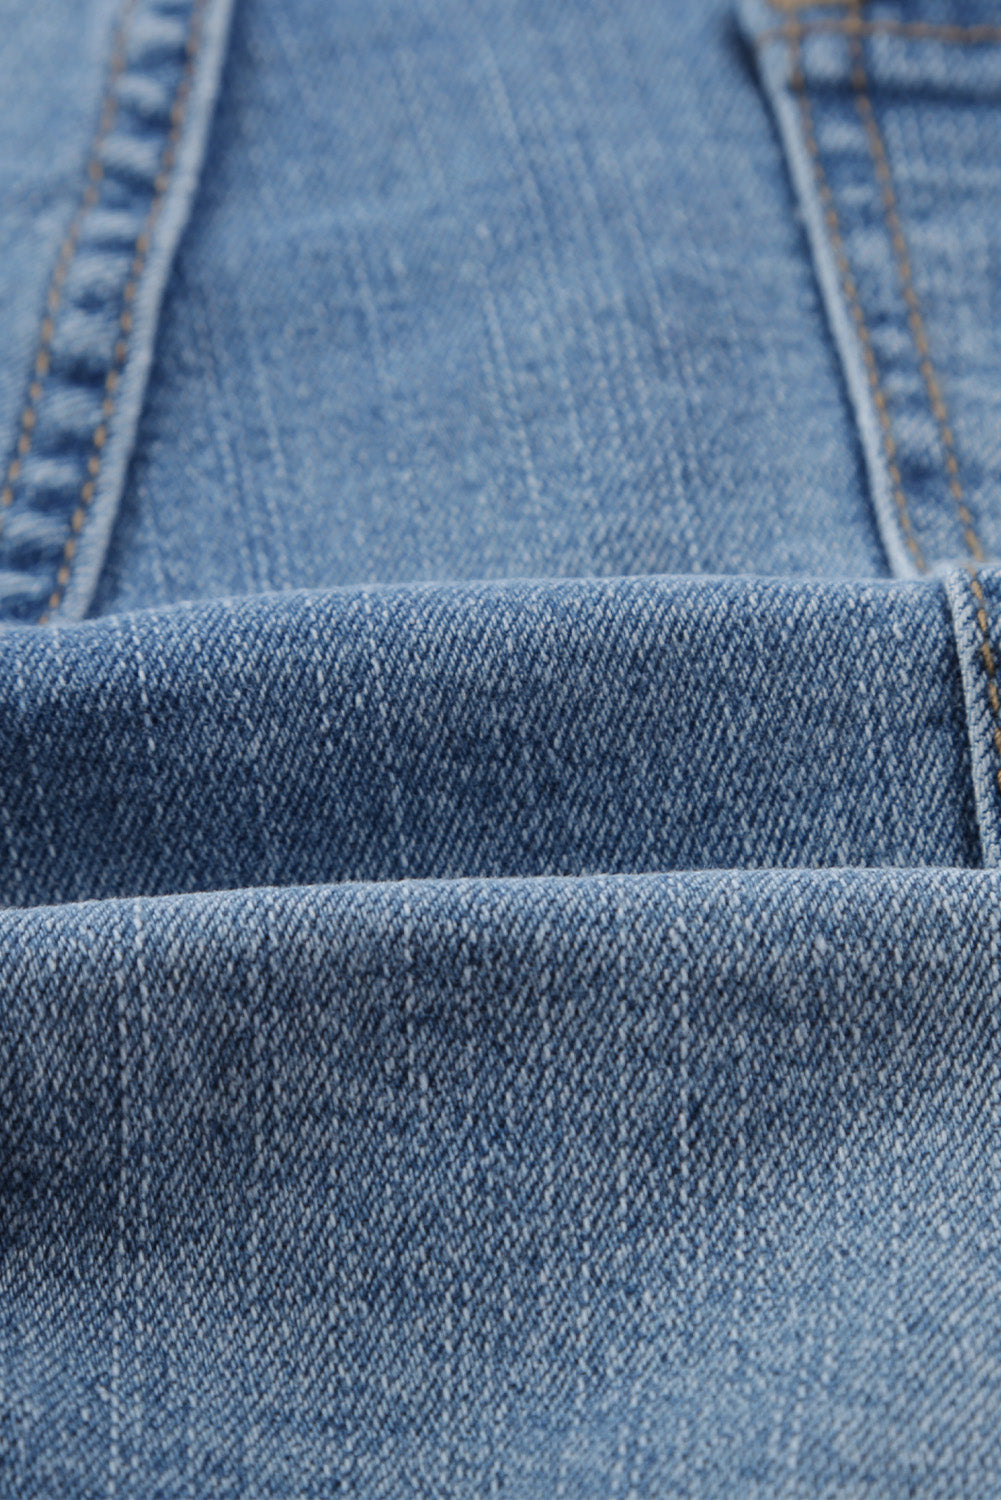 Pantaloncini di jeans invecchiati sbiaditi vintage azzurri